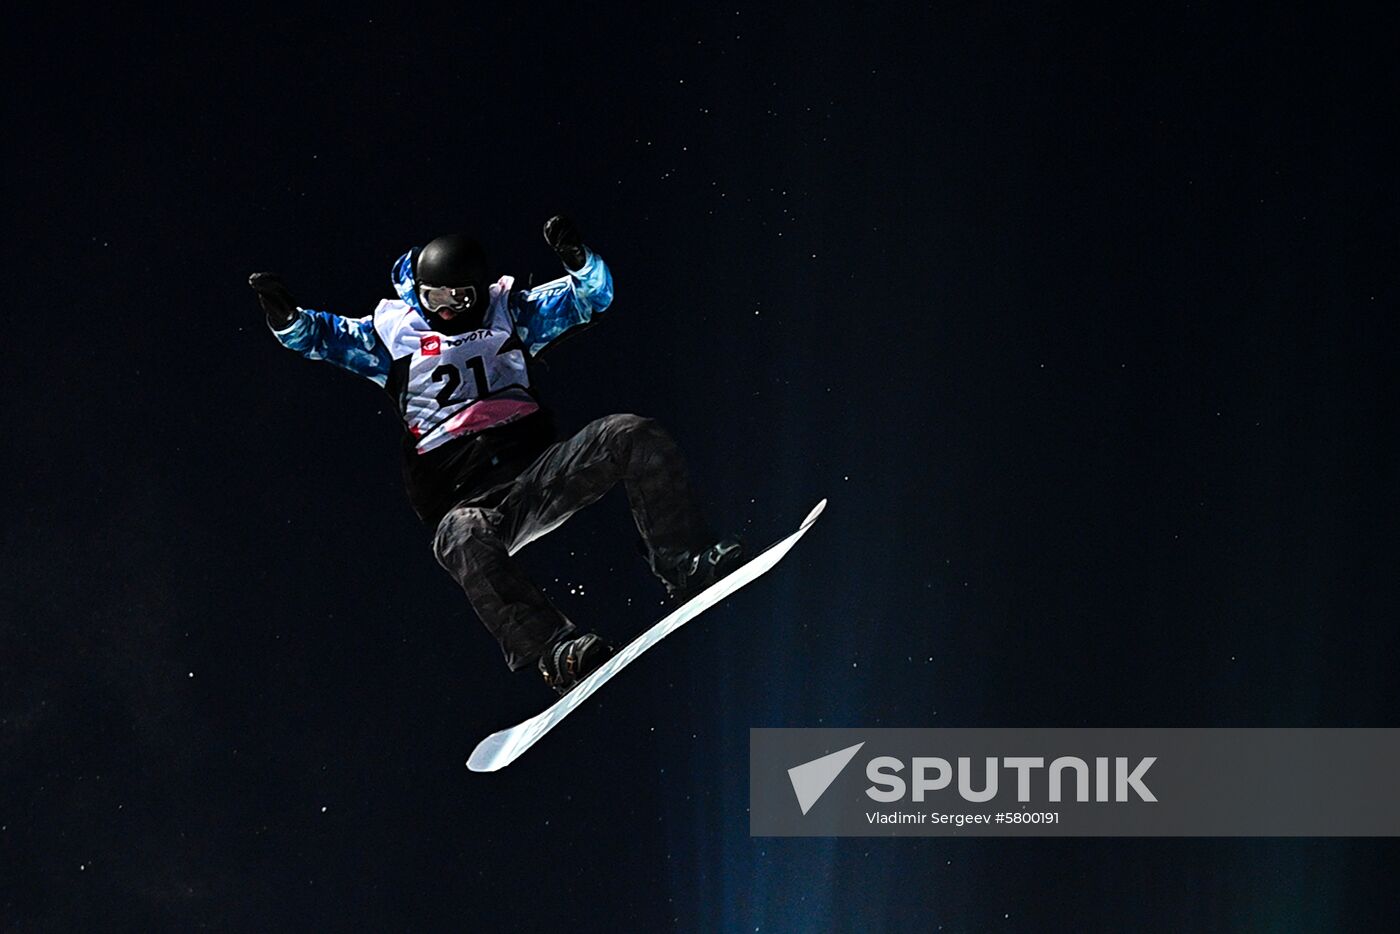 Russia Snowboard Grand Prix